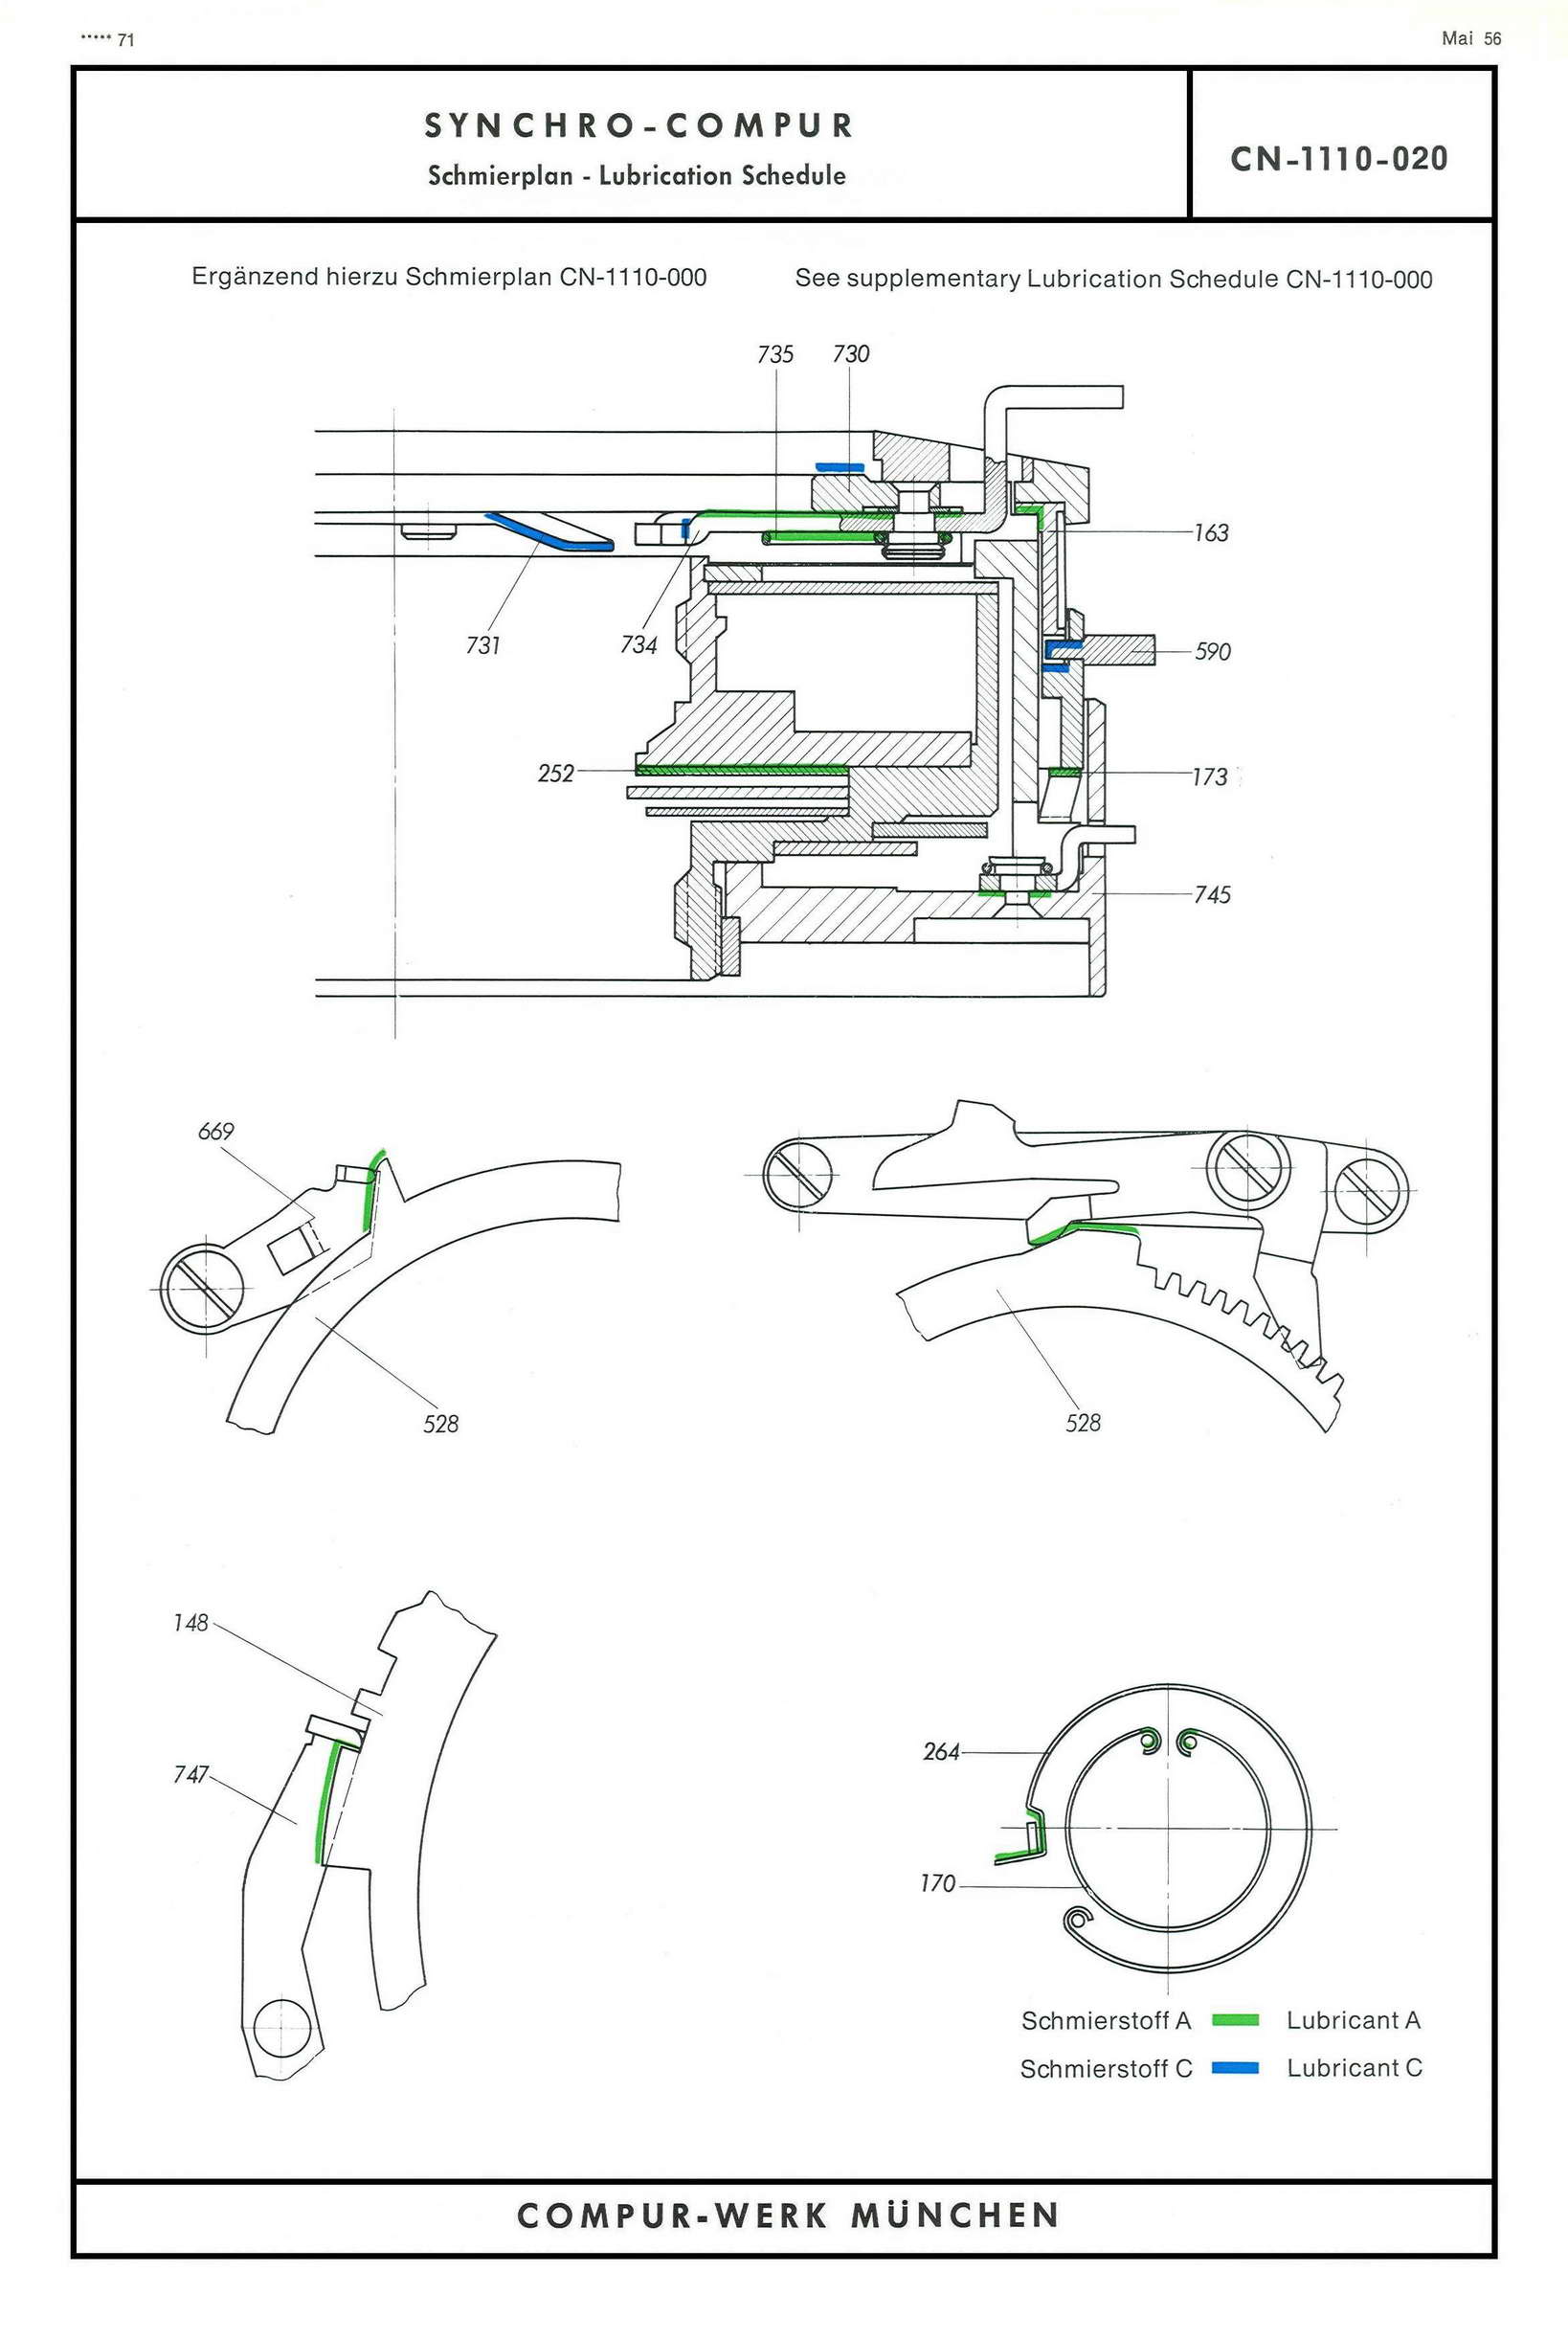 vito prontor svs shutter repair manual free download pdf